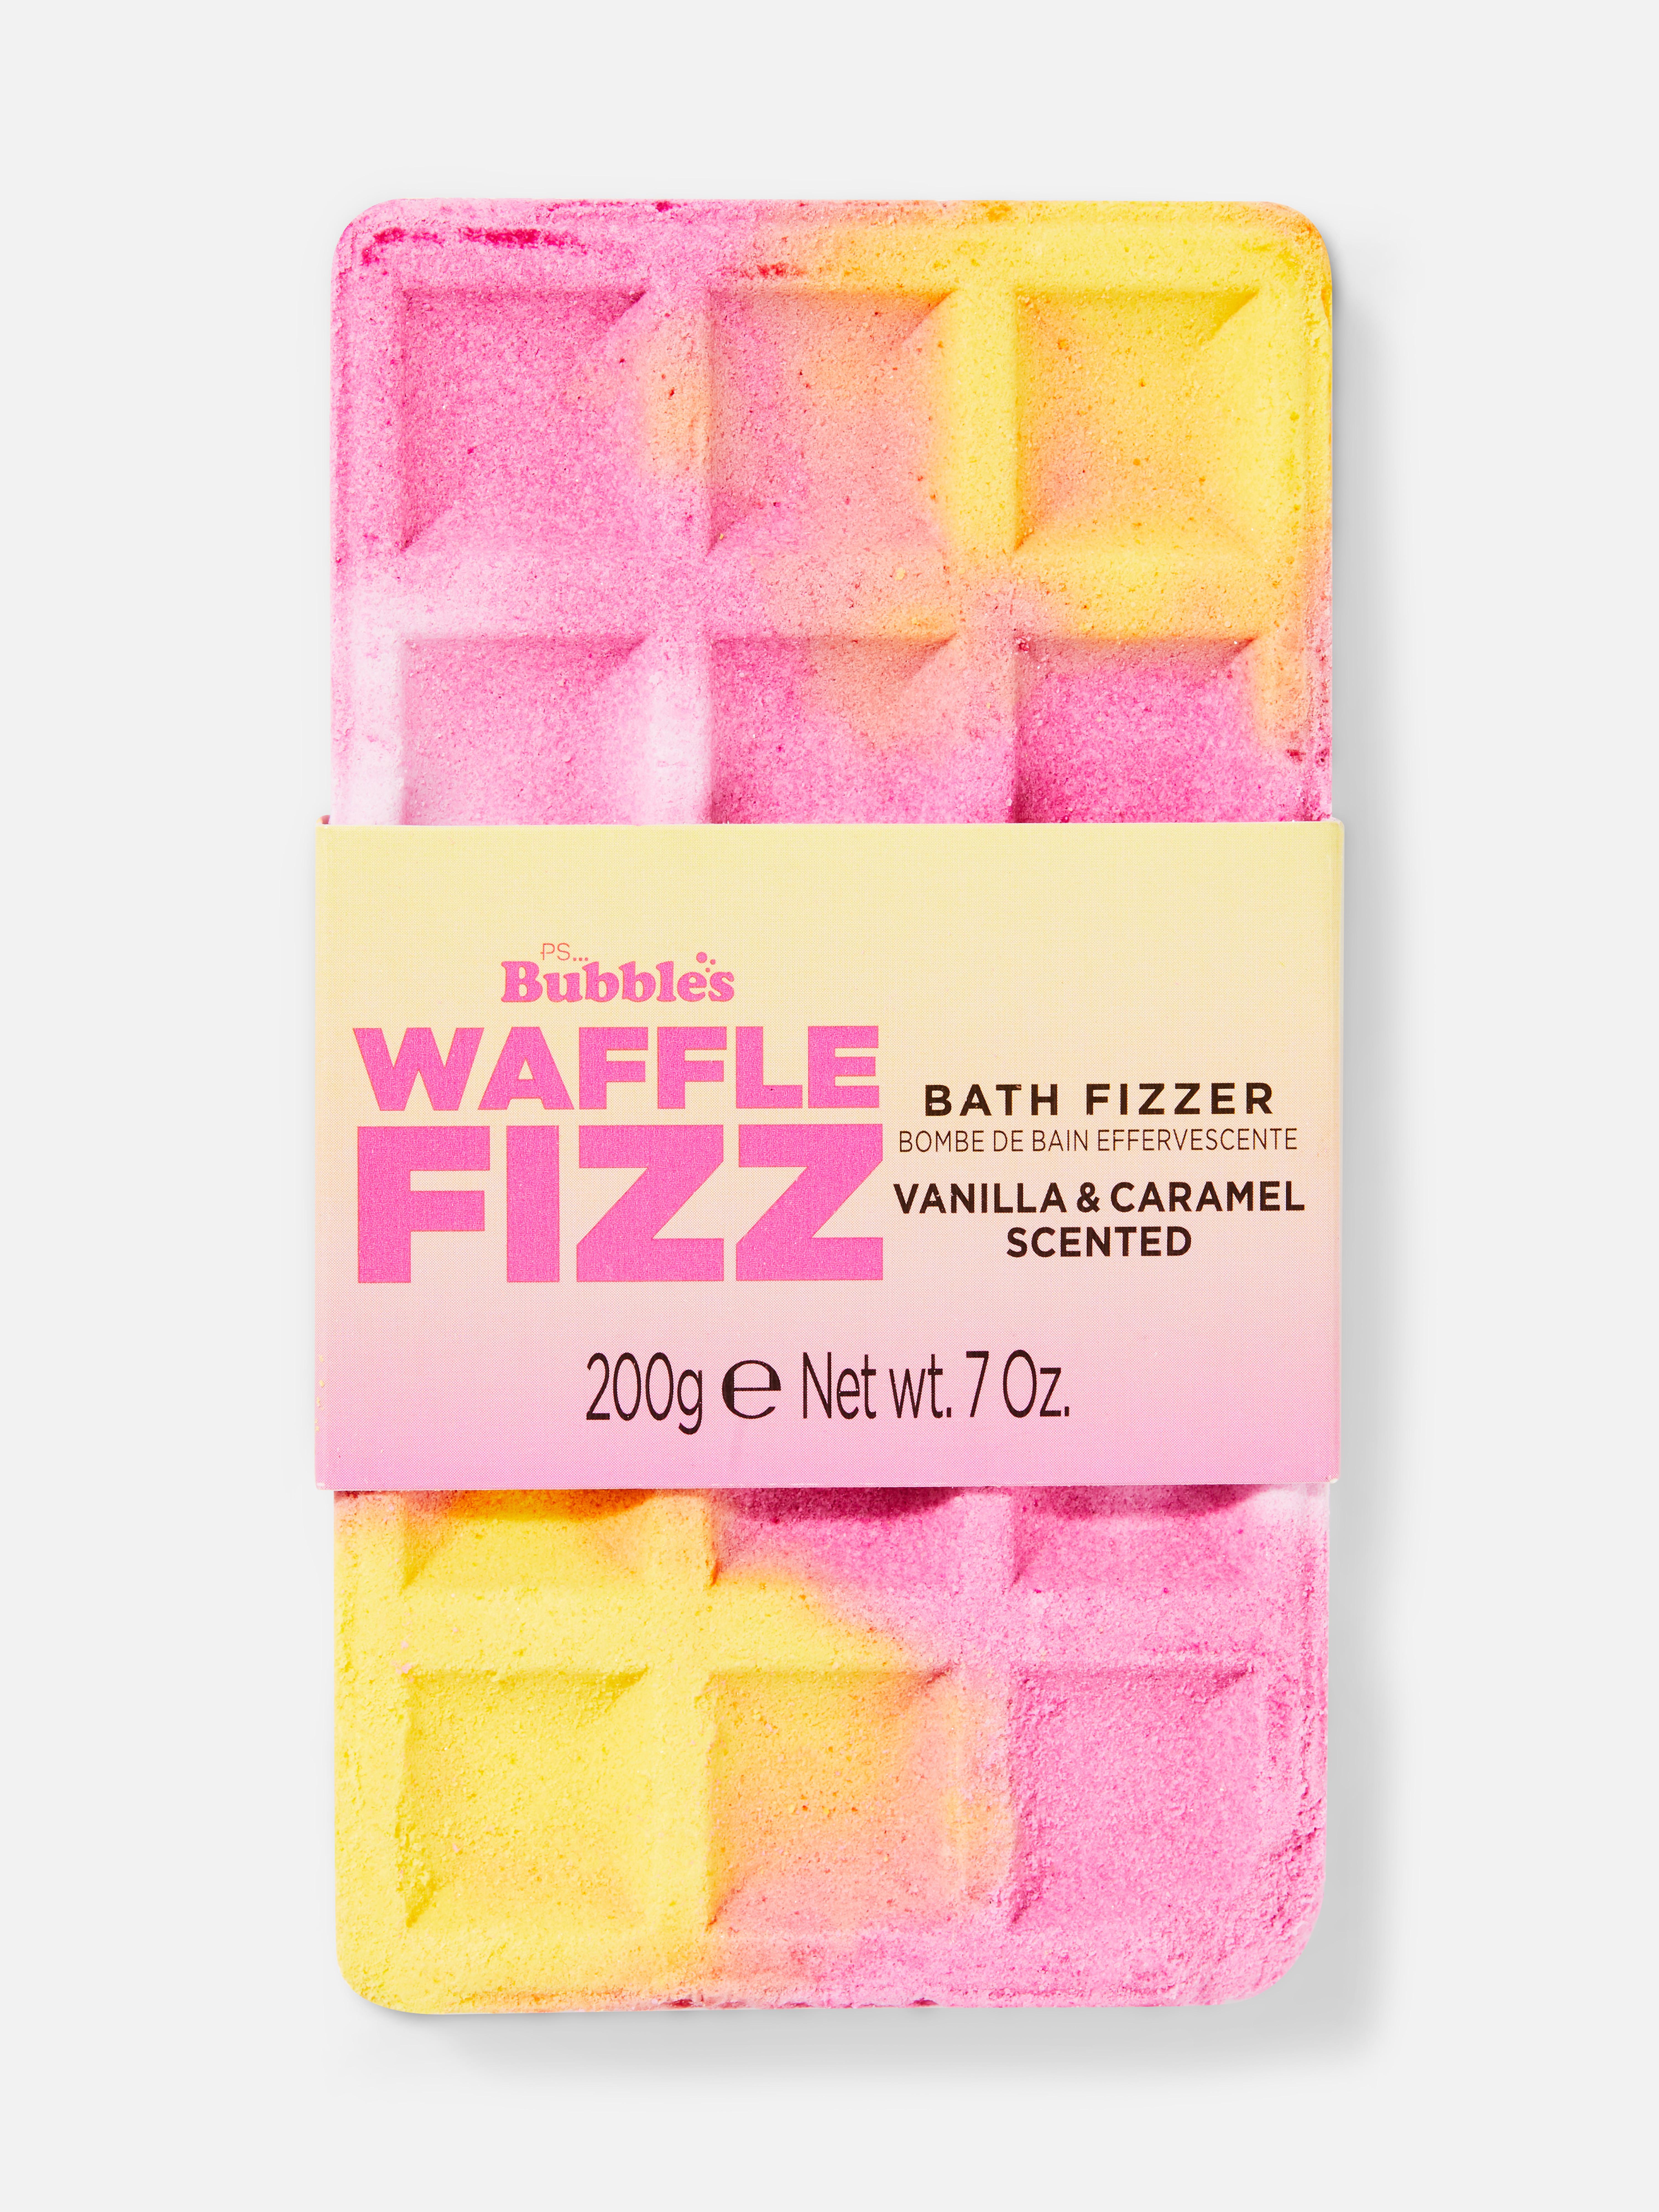 PS…Bubbles Waffle Bath Fizzer